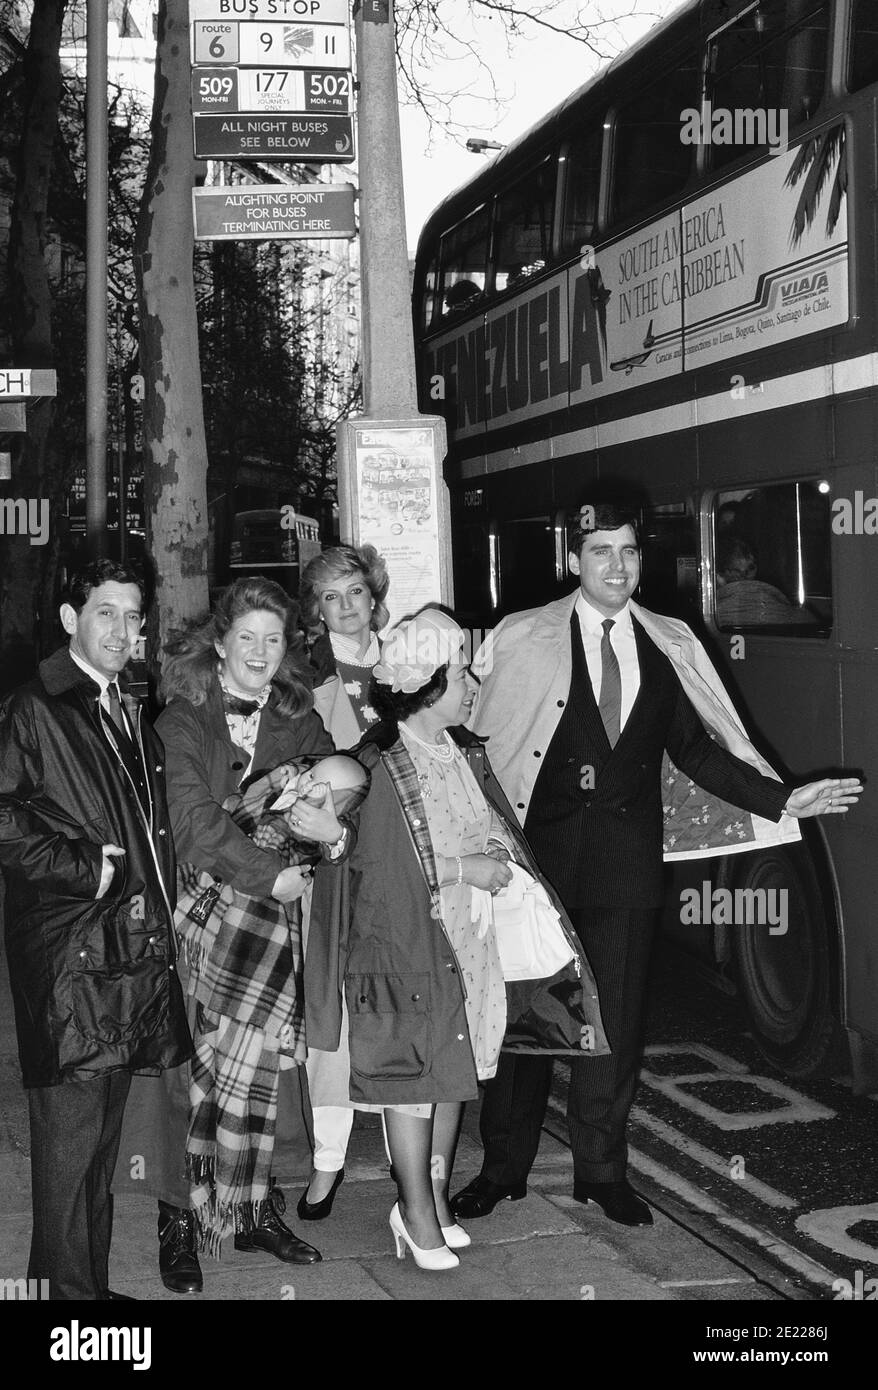 Un groupe d'usurpateurs de la famille royale britannique faisant la queue à un arrêt de bus pour prendre un bus rouge à impériale. Londres. Angleterre, Royaume-Uni, Circa 1989 Banque D'Images